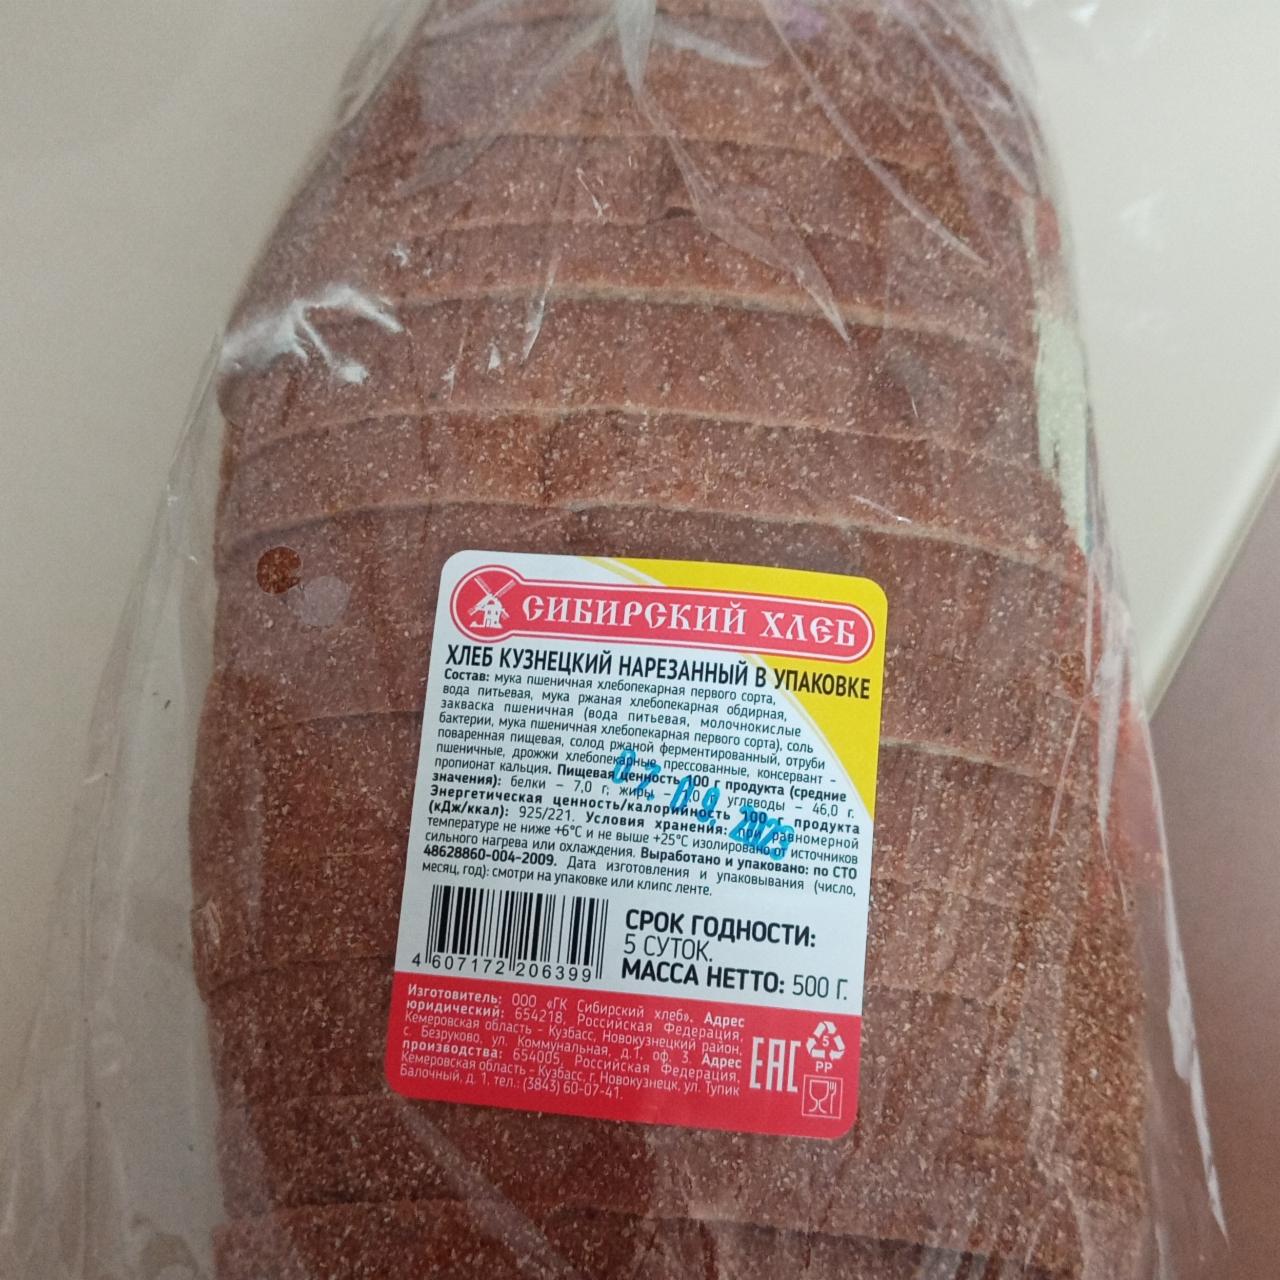 Фото - Хлеб кузнецкий нарезанный в упаковке Сибирский хлеб